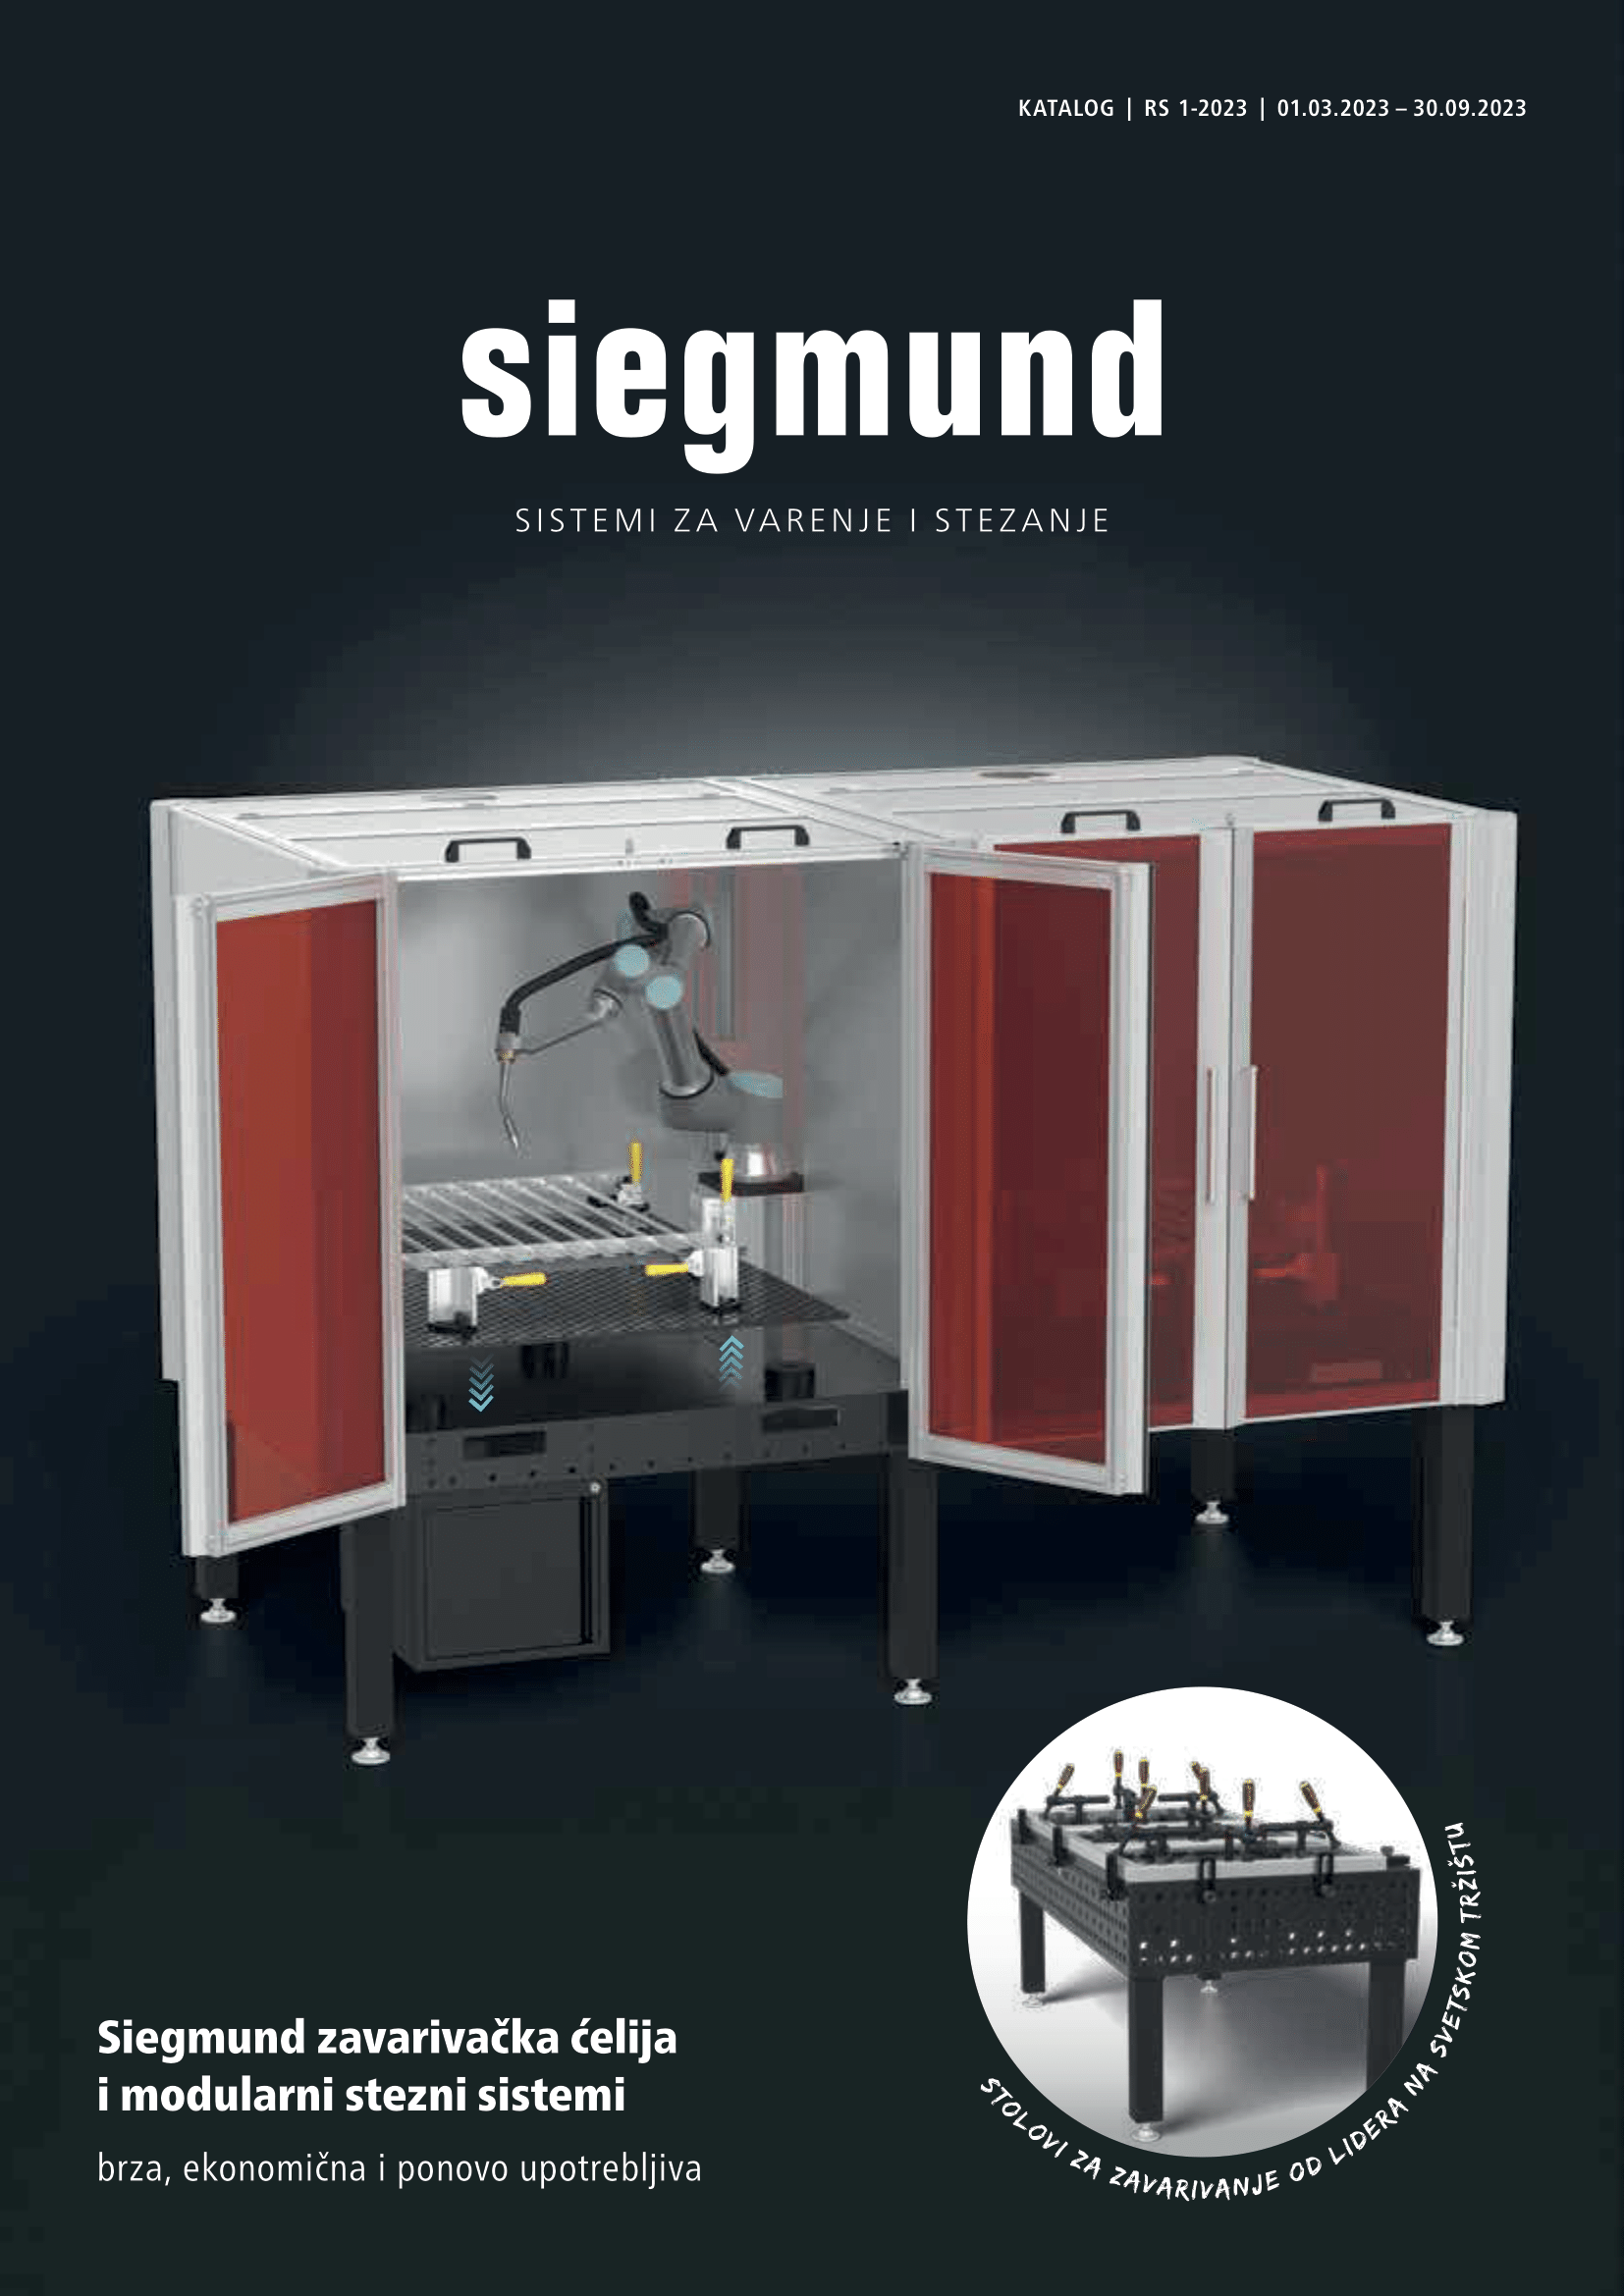 Siegmund - katalog